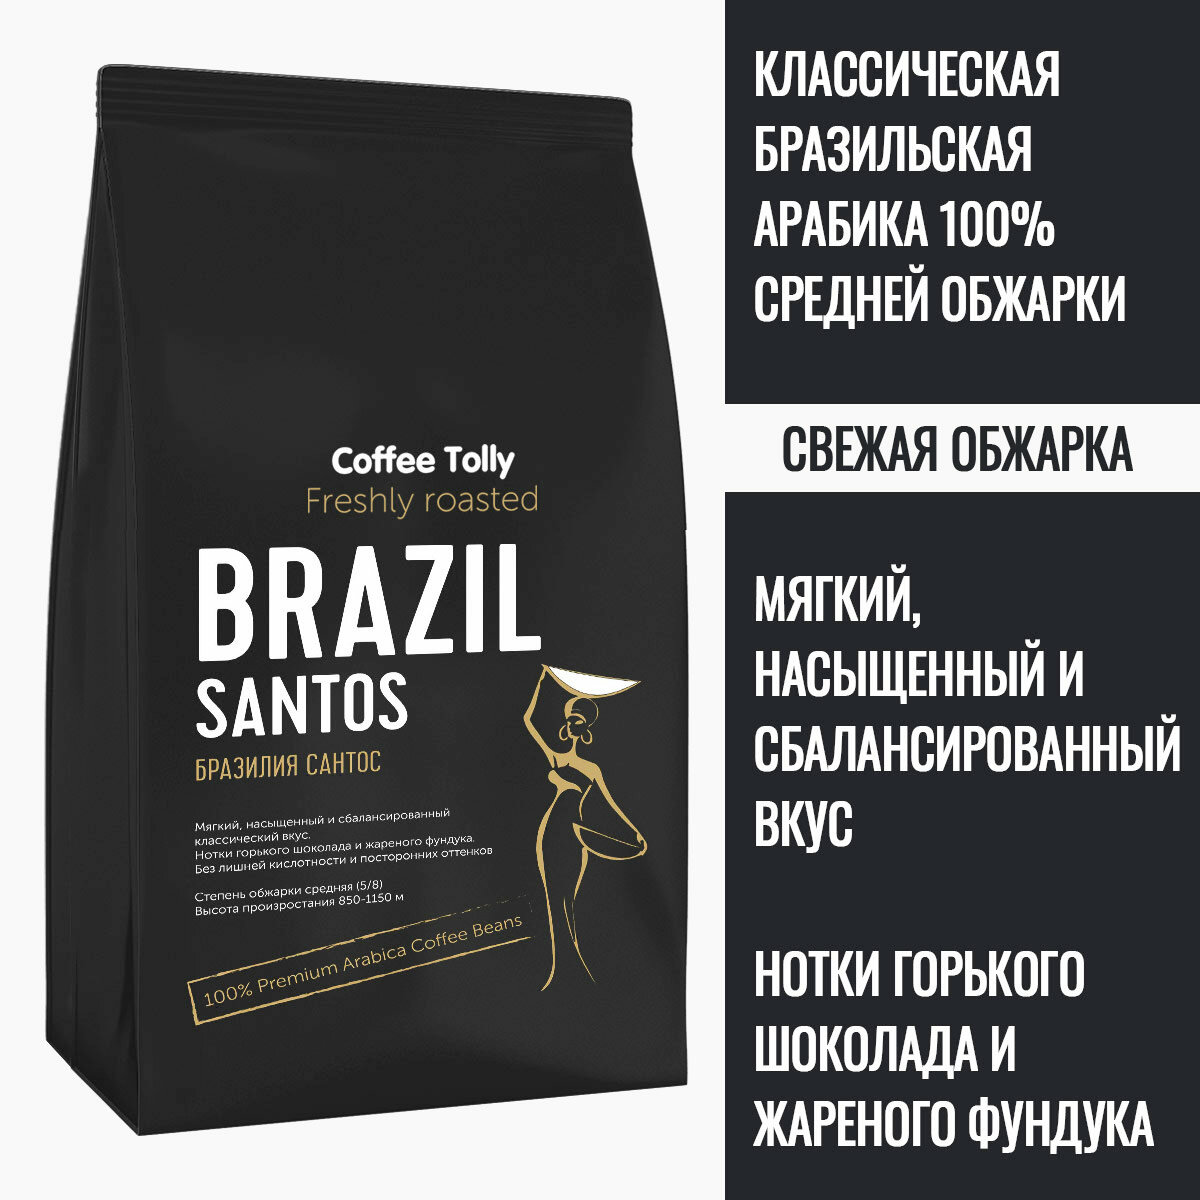 Brazil Santos свежеобжаренный кофе в зернах 300 гр. / Арабика 100%